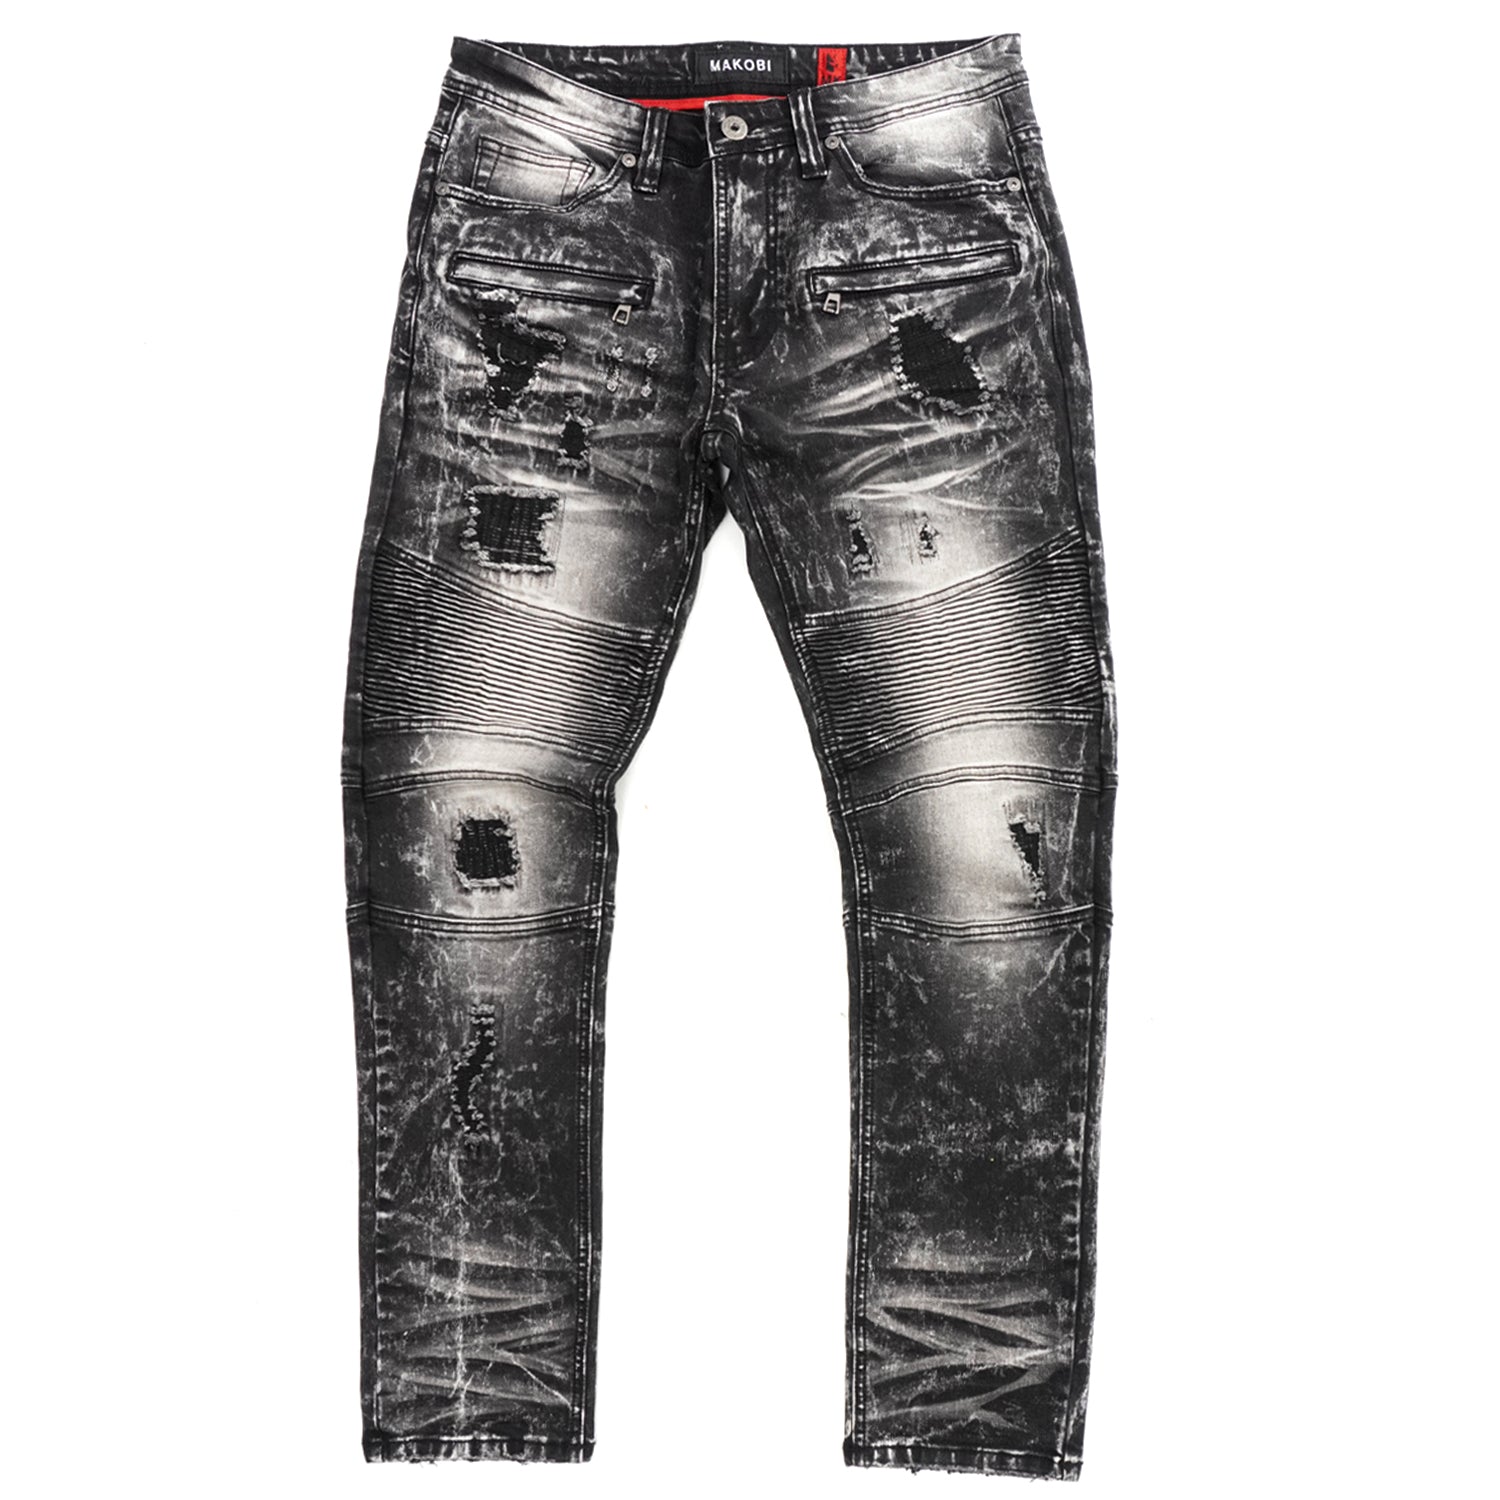 M1786 Makobi Prado Biker Jeans with Rip & Repair - Black Wash – Makobi ...